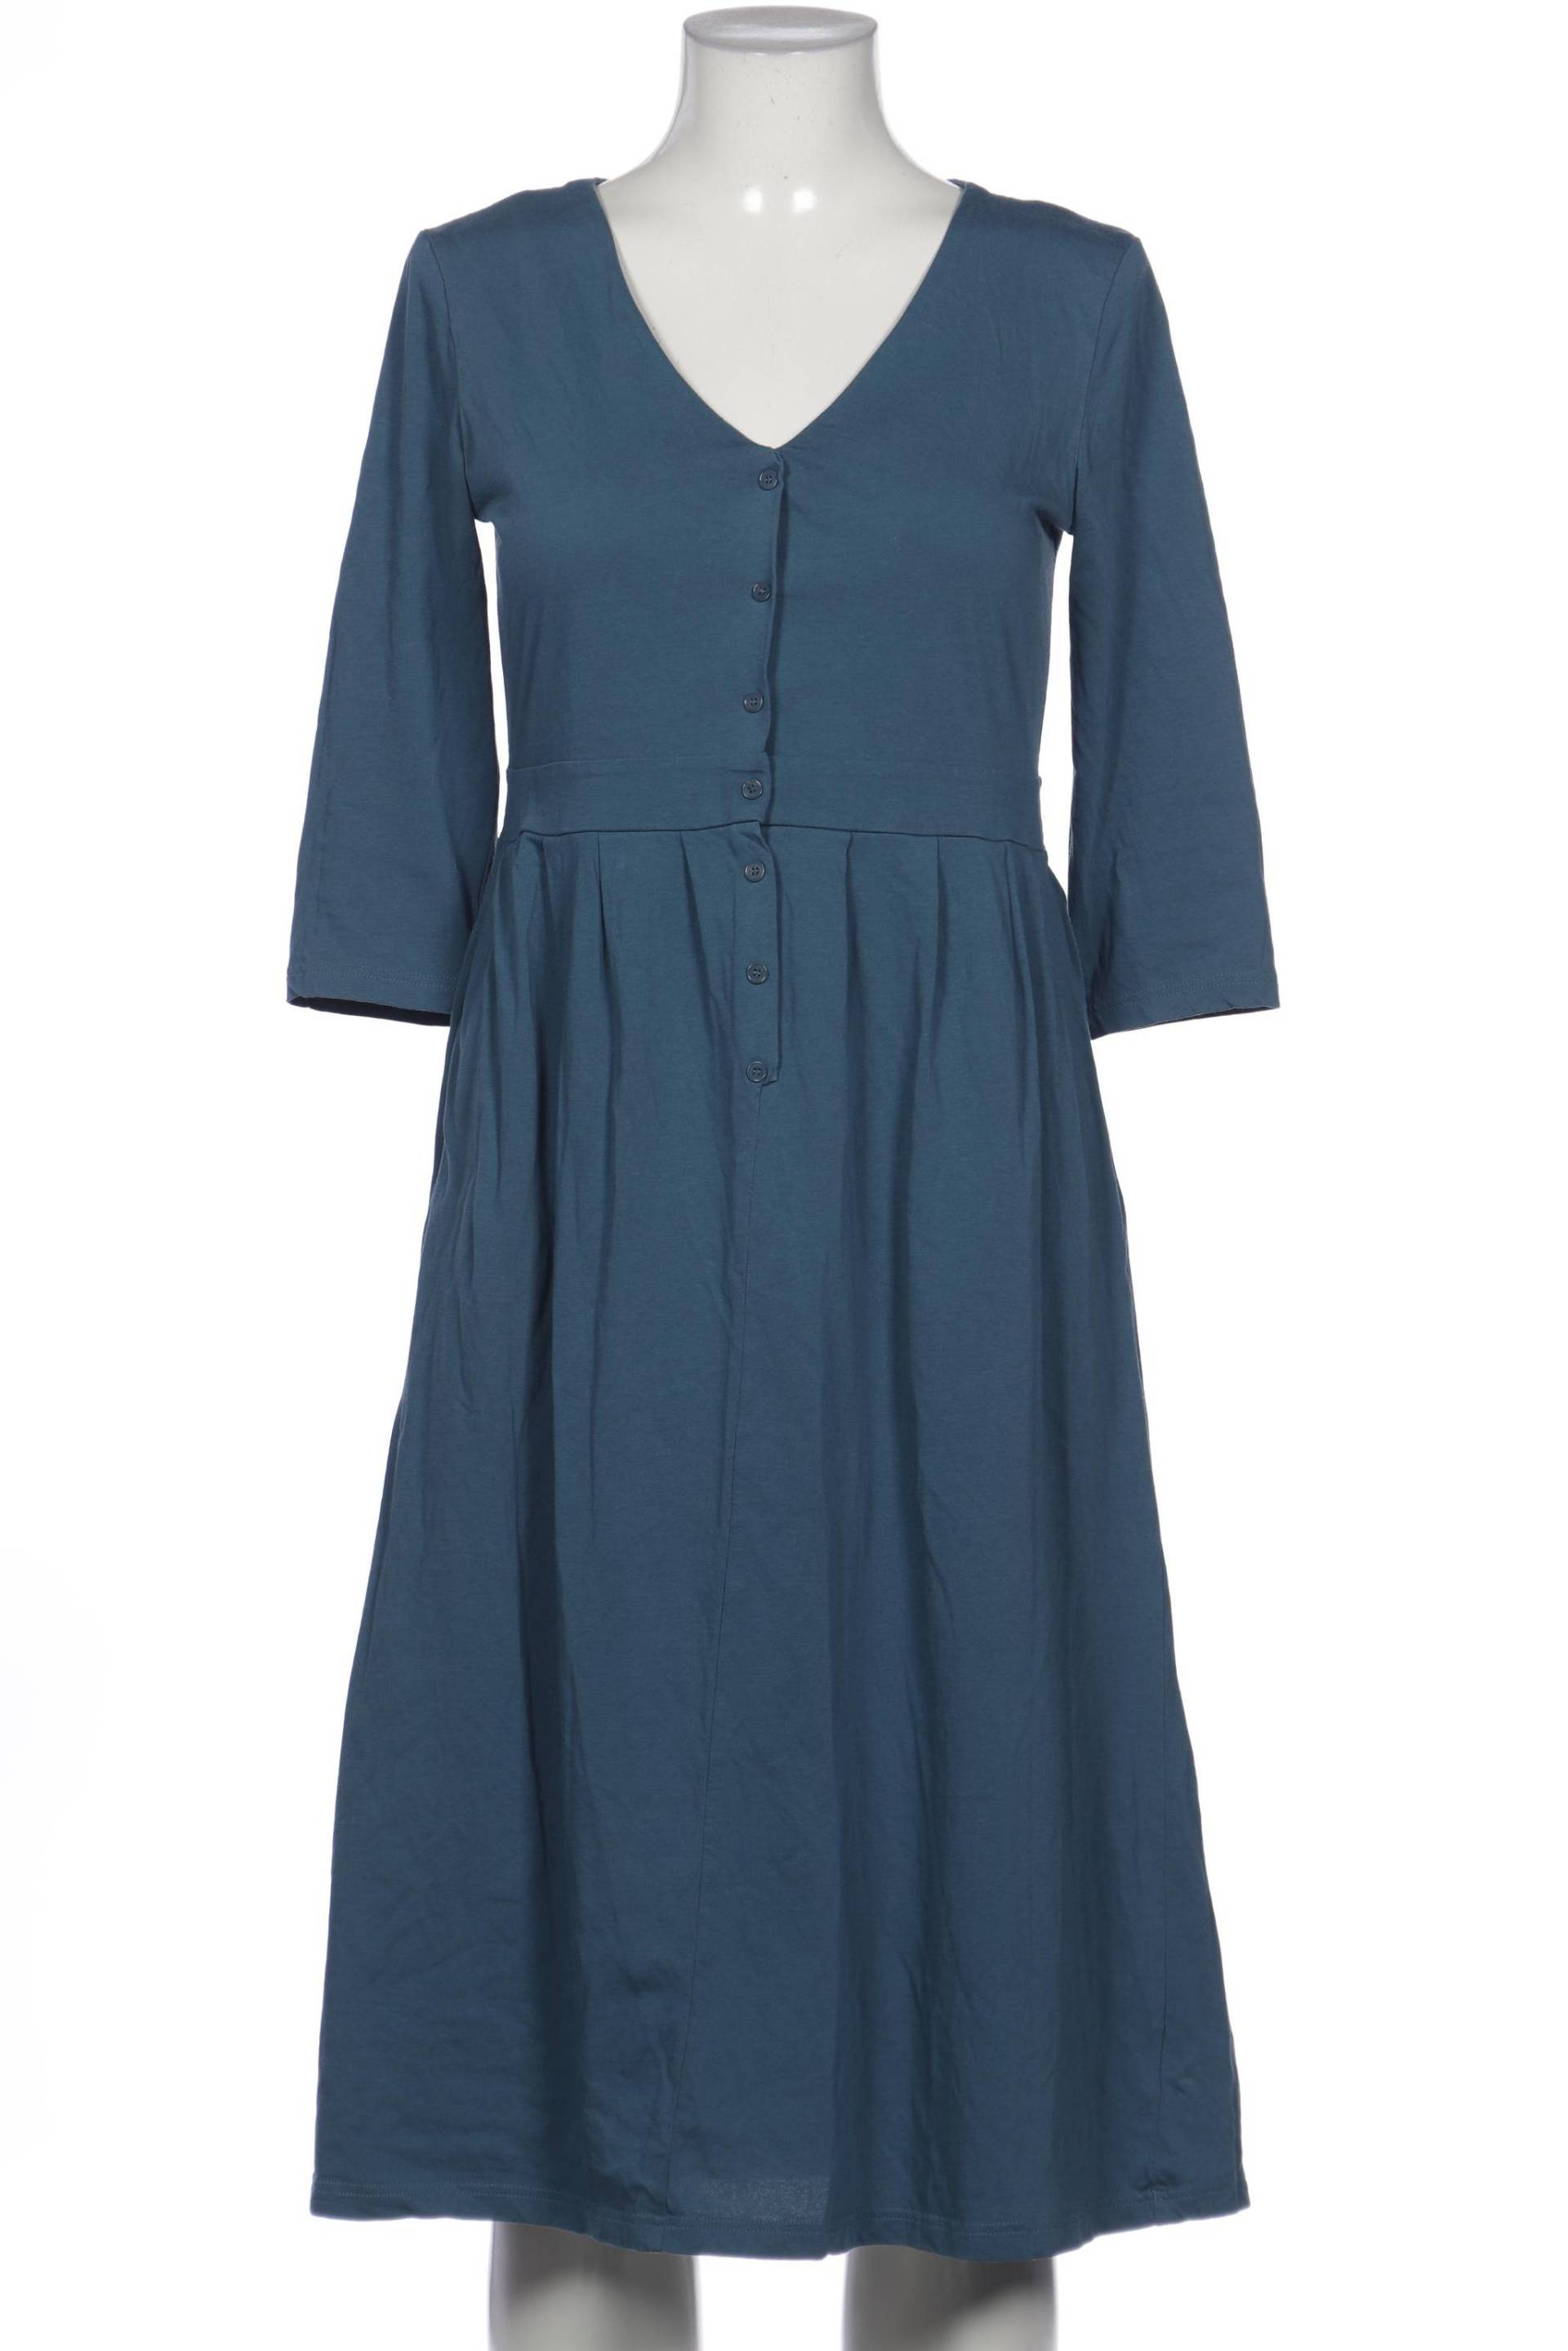 hessnatur Damen Kleid, blau, Gr. 38 von hessnatur